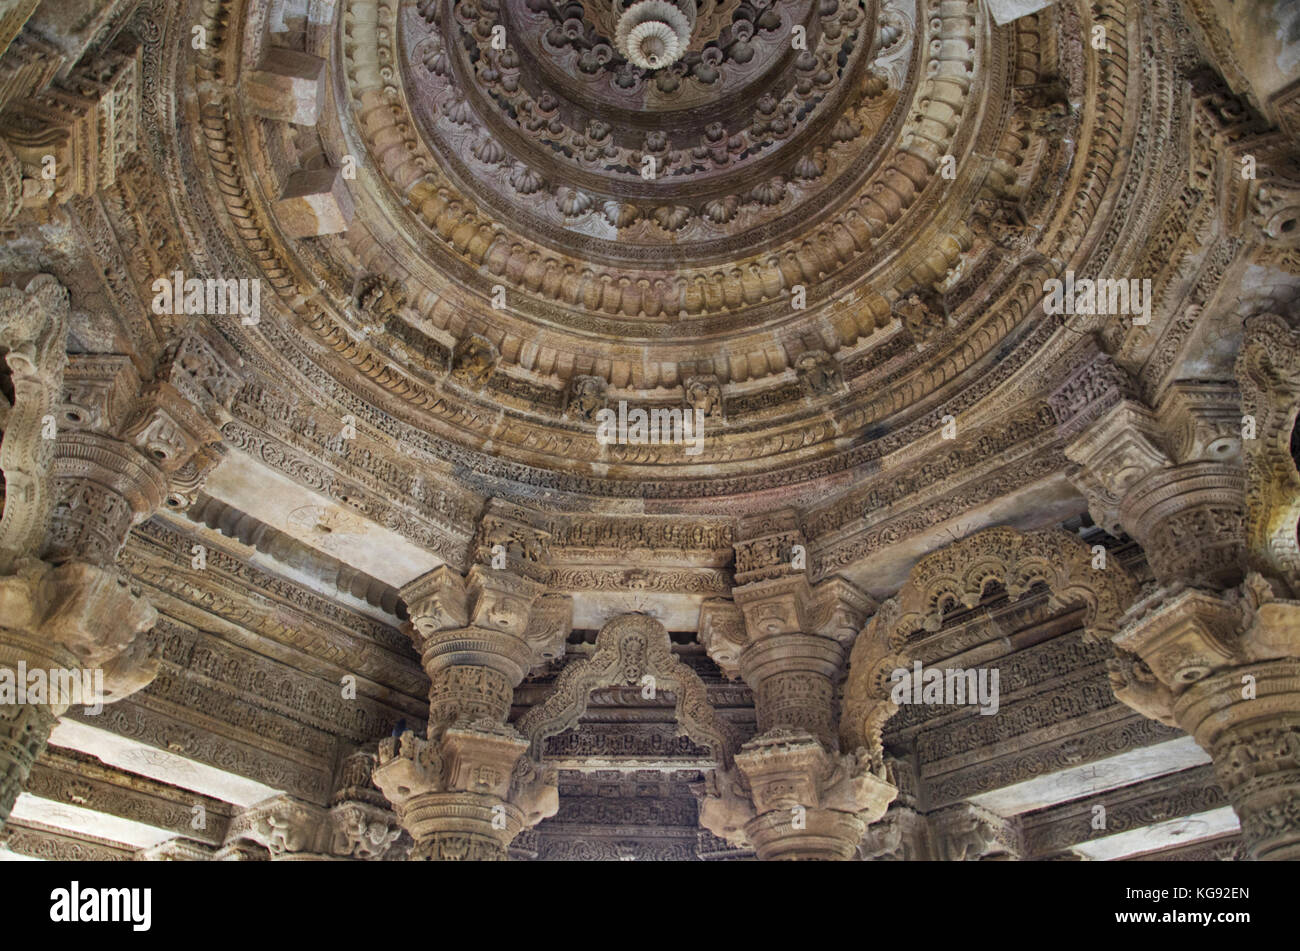 De plafond sculpté le temple du soleil. Construit en 1026 - 27 annonce pendant le règne de bhima i de la dynastie, chaulukya modhera village de mehsana district, guj Banque D'Images